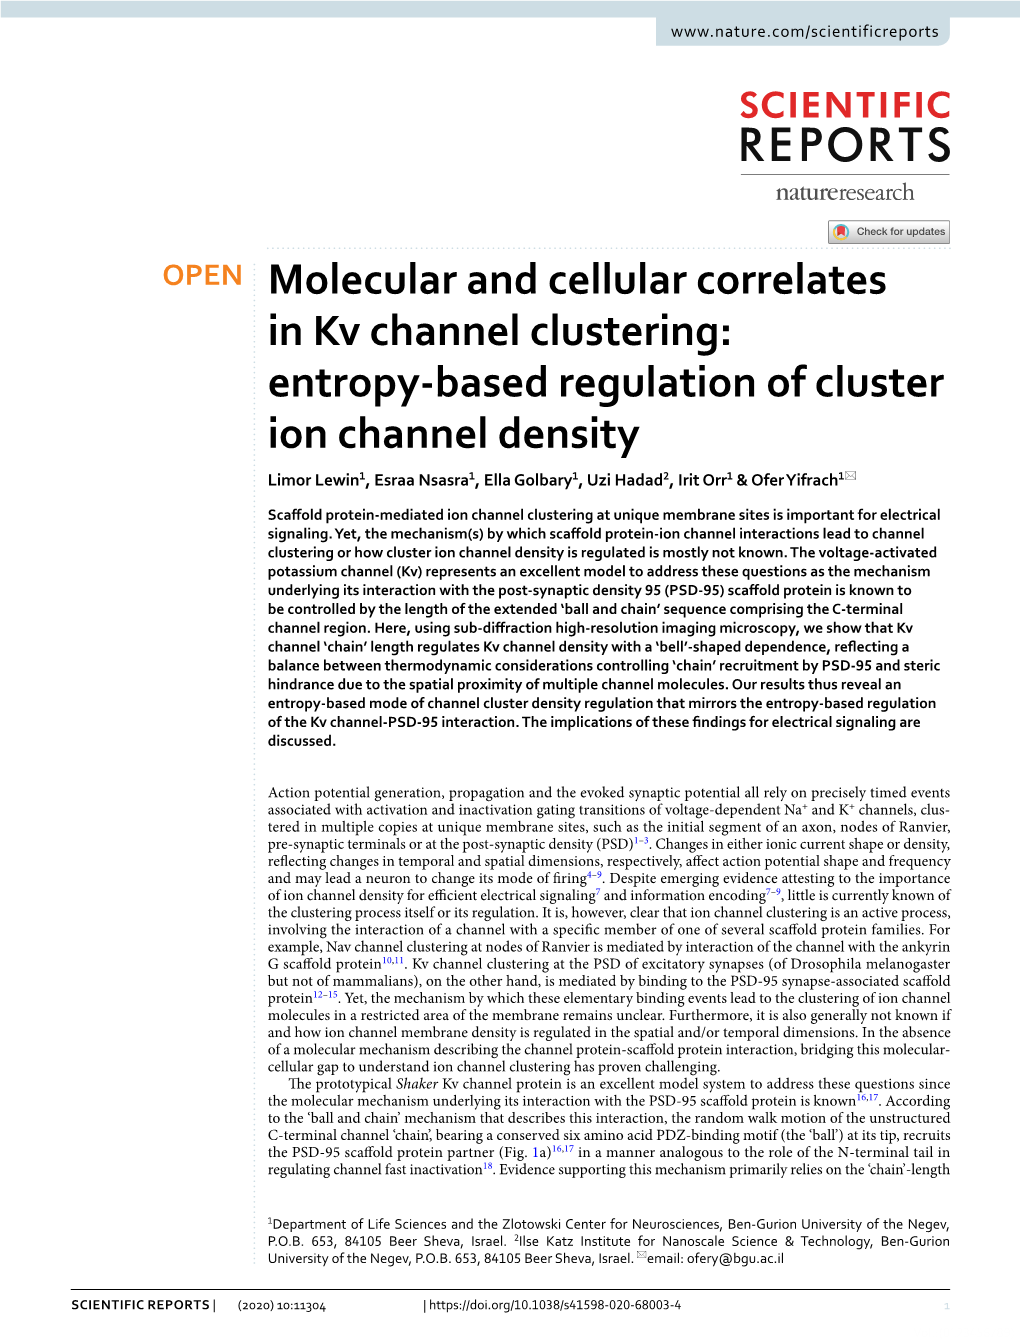 Entropy-Based Regulation of Cluster Ion Channel Density